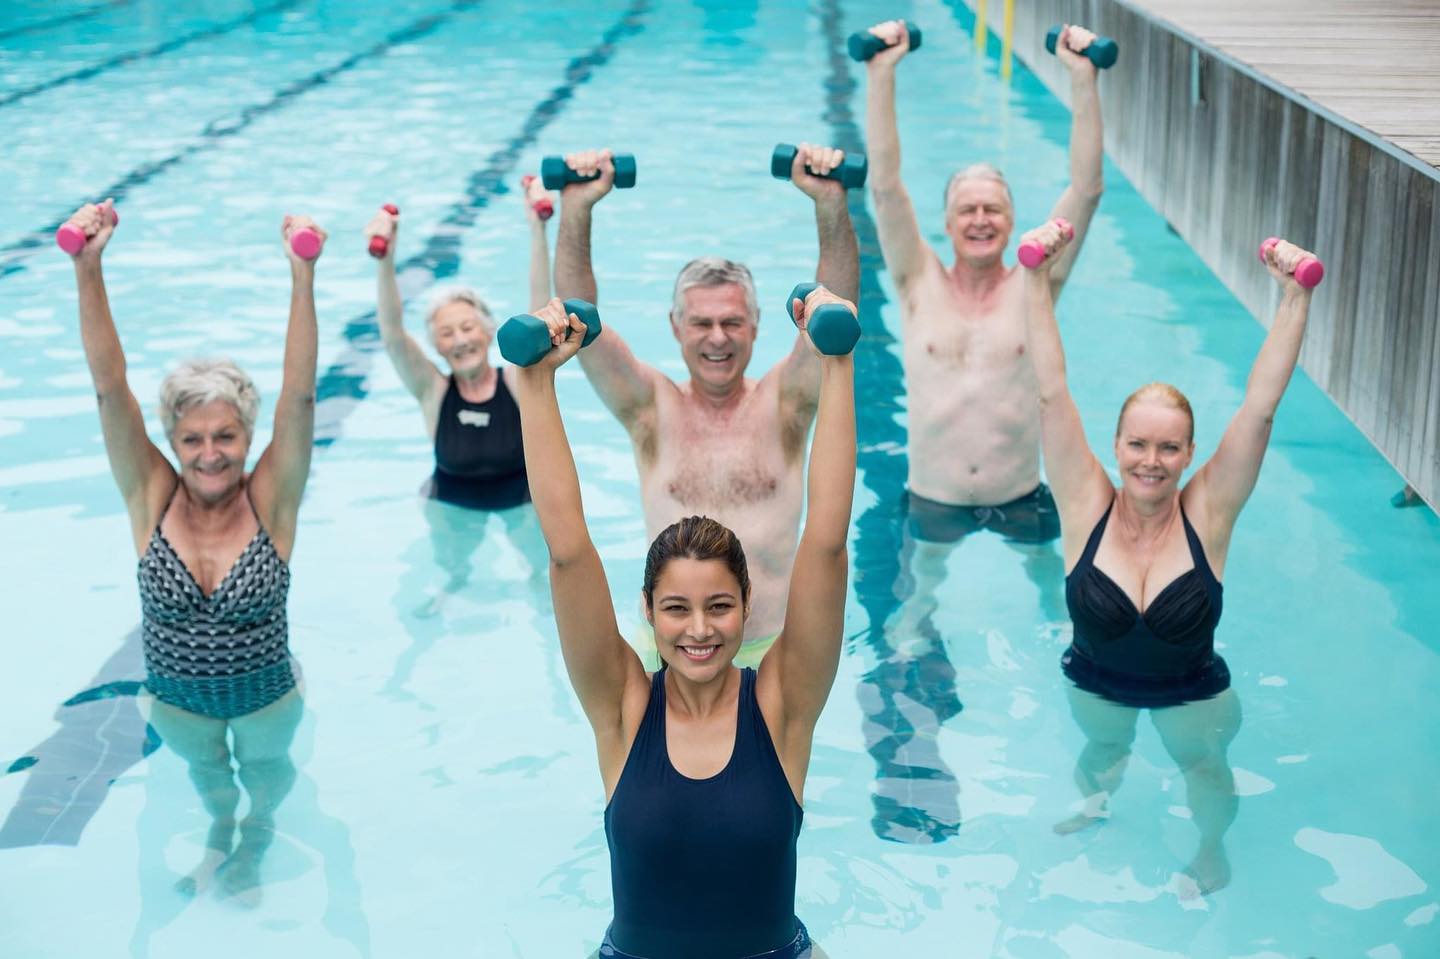 Aqua-Jogging, Aqua-Cycling oder Aquarobic: Hast du schon mal Sport im Wasser ausprobiert? 😍 Der hat nämlich positive Auswirkungen auf deine Gesundheit! Und im Sommer machen wir’s doppelt gern, denn da ist der Sprung ins kühle Nass eine besonders angenehme Erfrischung. 🏊🏻‍♀️ Wir nennen dir 5 Gründe, warum sich ein Workout im Wasser lohnt: 

➡️ Du baust Kondition auf 
➡️ Du schonst dabei deine Gelenke 
➡️ Du unterstützt dein Herz-Kreislauf-System 
➡️ Du sorgst für bessere Durchblutung 
➡️ Du verbrennst dabei viele Kalorien

Teile gerne in den Kommentaren deine Erfahrungen! 🧐 
Übrigens: Ubiquinol kann deine Trainingsleistung unterstützen und Mikroverletzungen im Muskel entgegenwirken. 💪
#aquafitness #aquabike #aquaaerobics #wassersport #fitness #sport #ubiquinol #mikronährstoffe #nahrungsergänzungsmittel #regeneration
©Shutterstock/wavebreakmedia